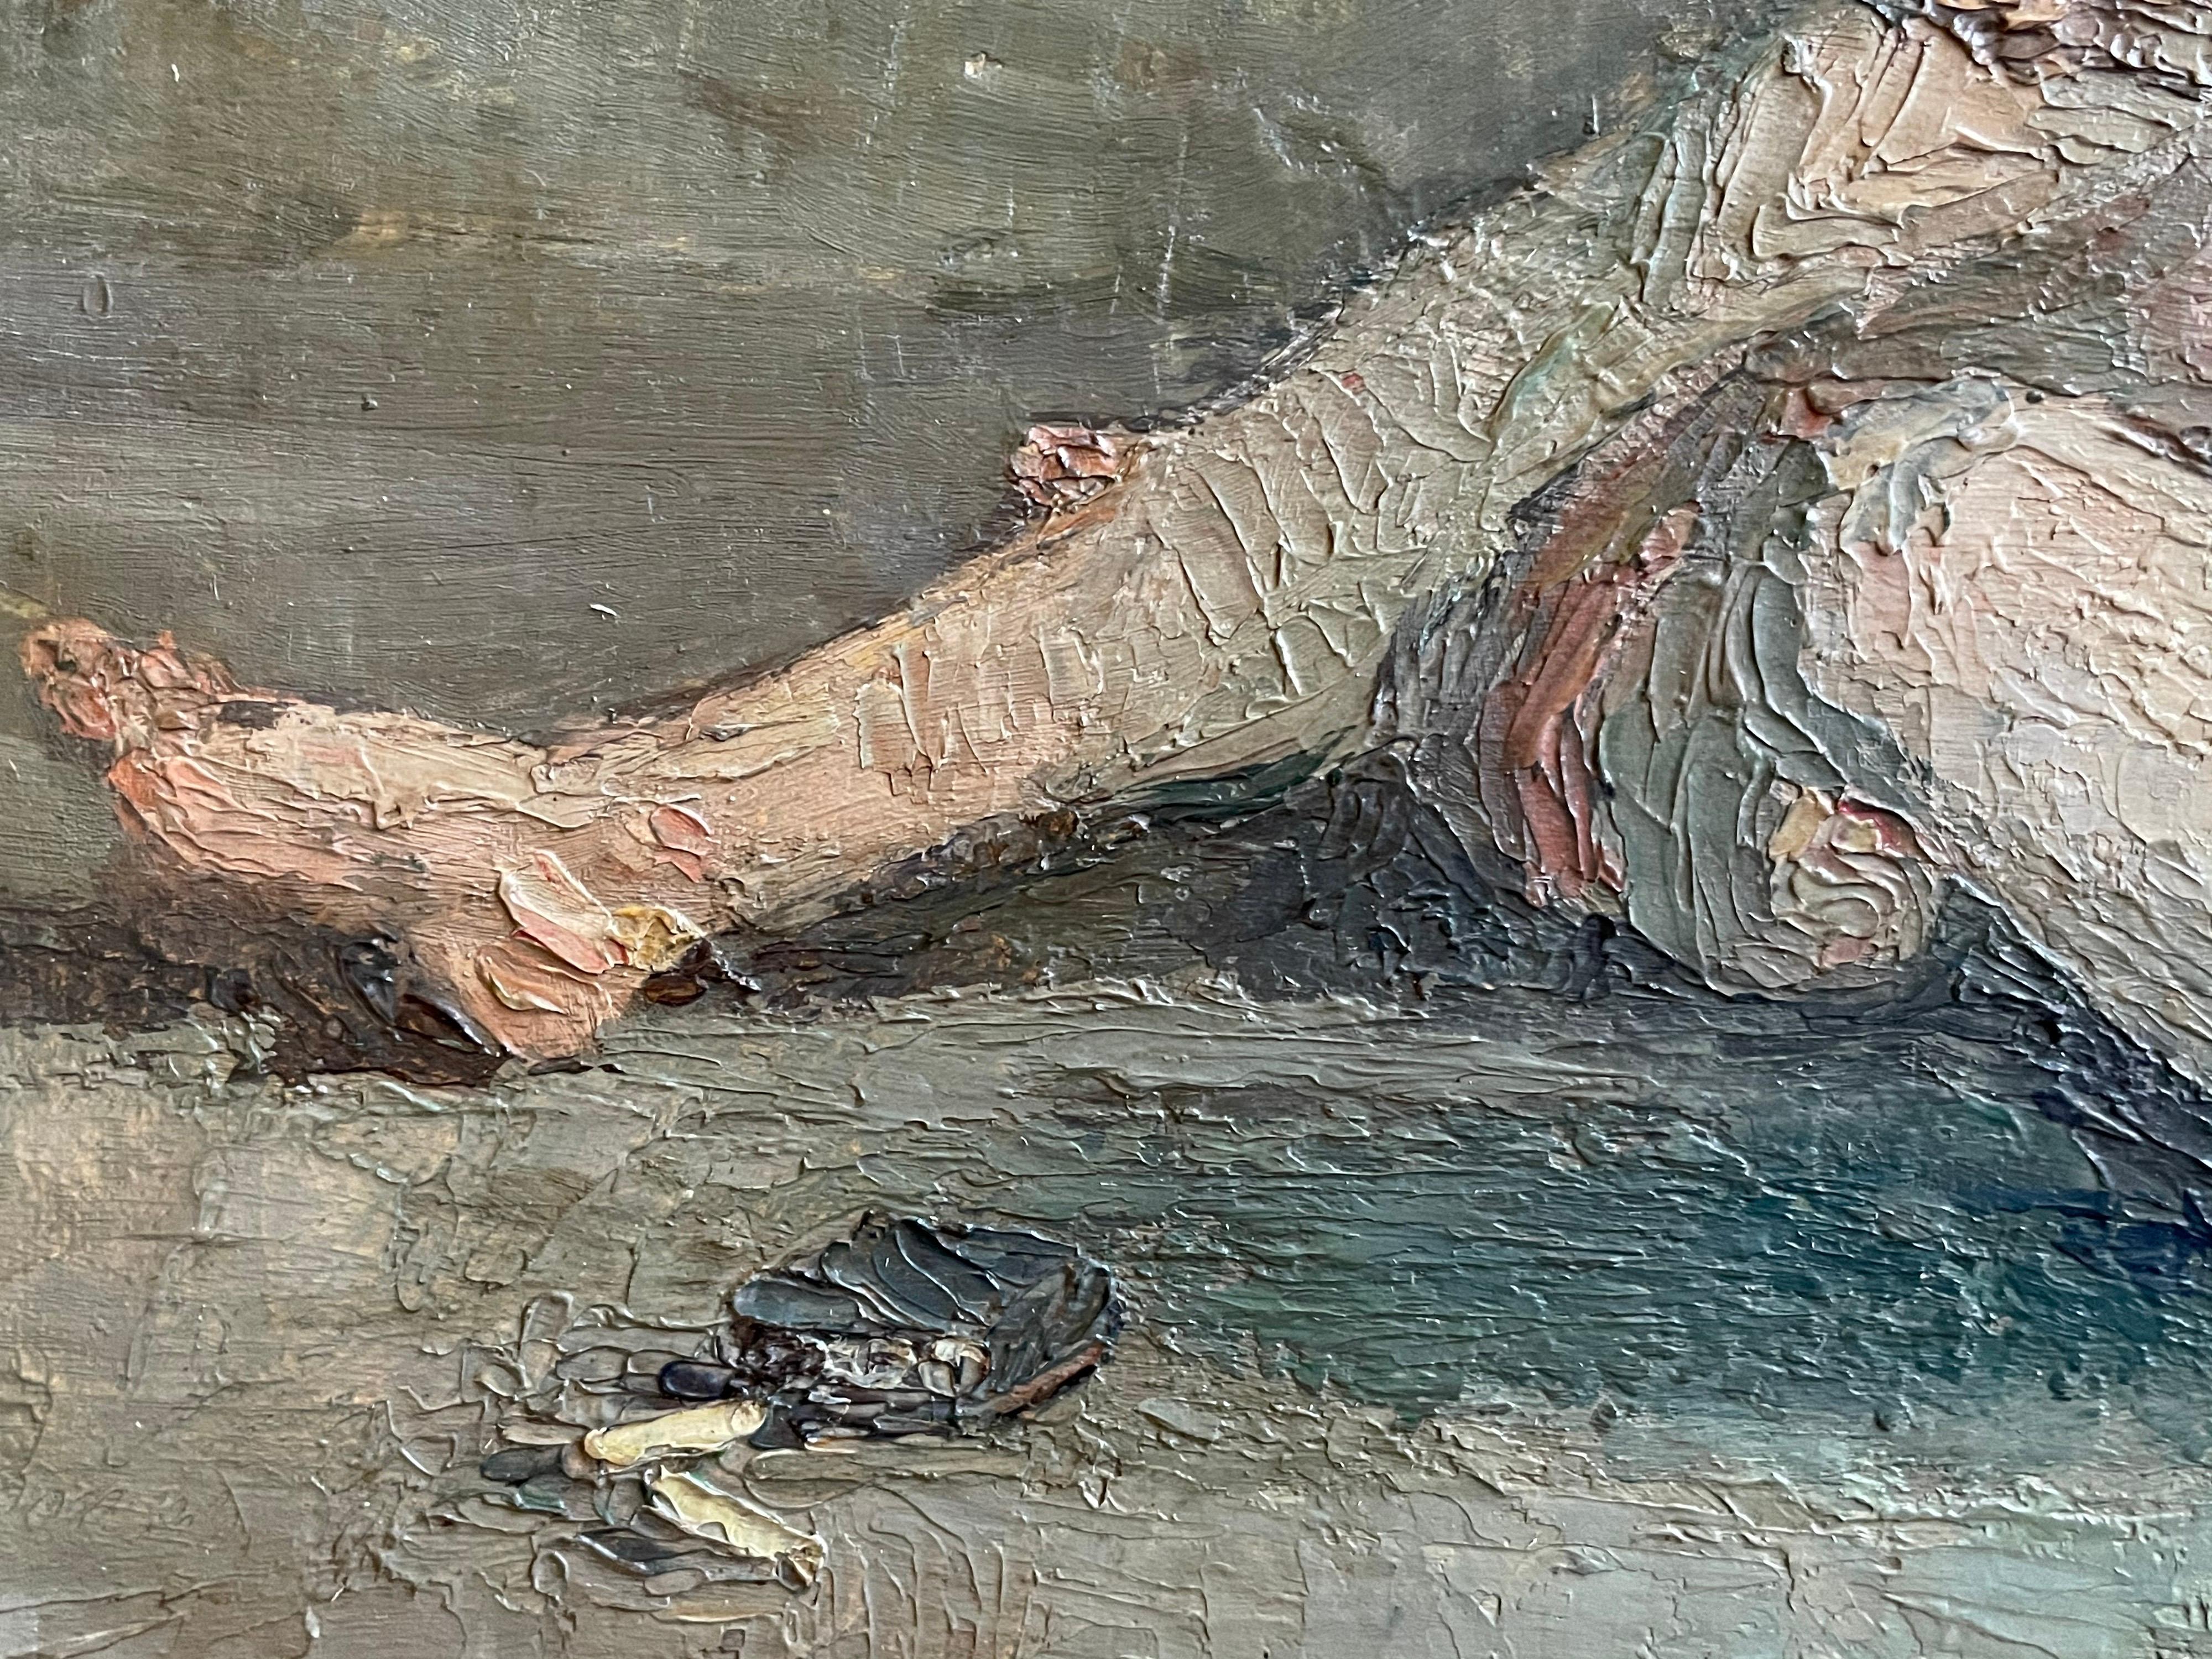 Portrait à l'huile français du début des années 1900 représentant une femme nue fumant une cigarette à l'intérieur - Post-impressionnisme Painting par Jean Desire Bascoules